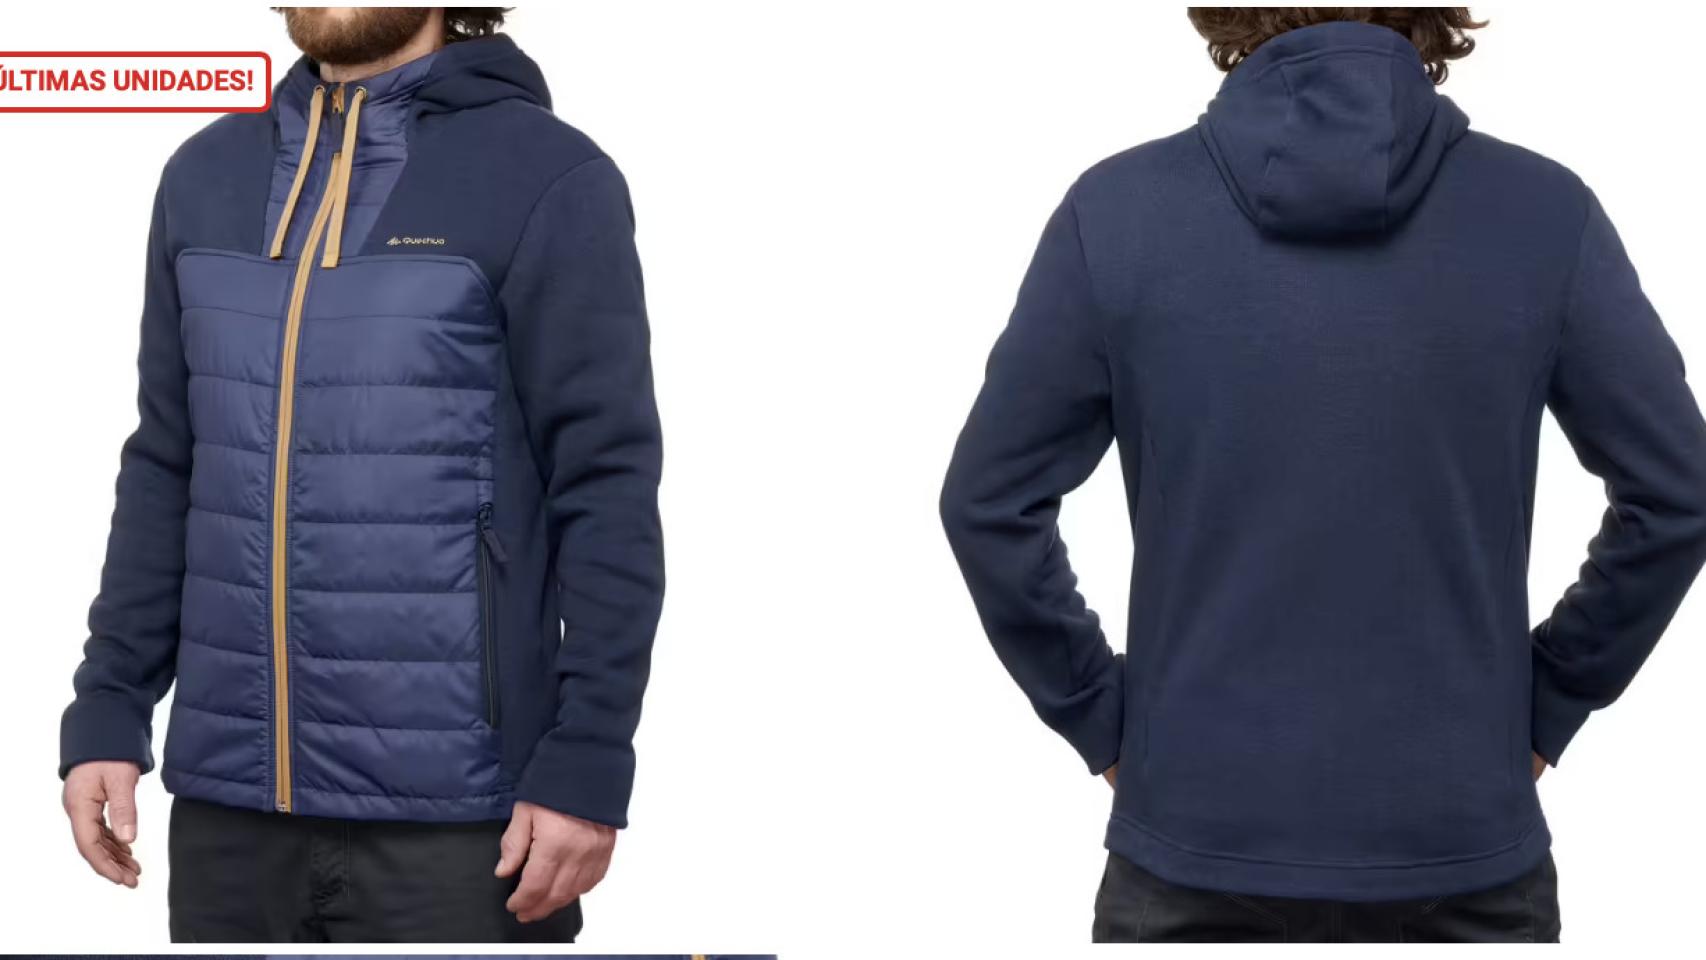 La chaqueta polar de Decathlon más usada en invierno: tan suave y calentita  como una manta